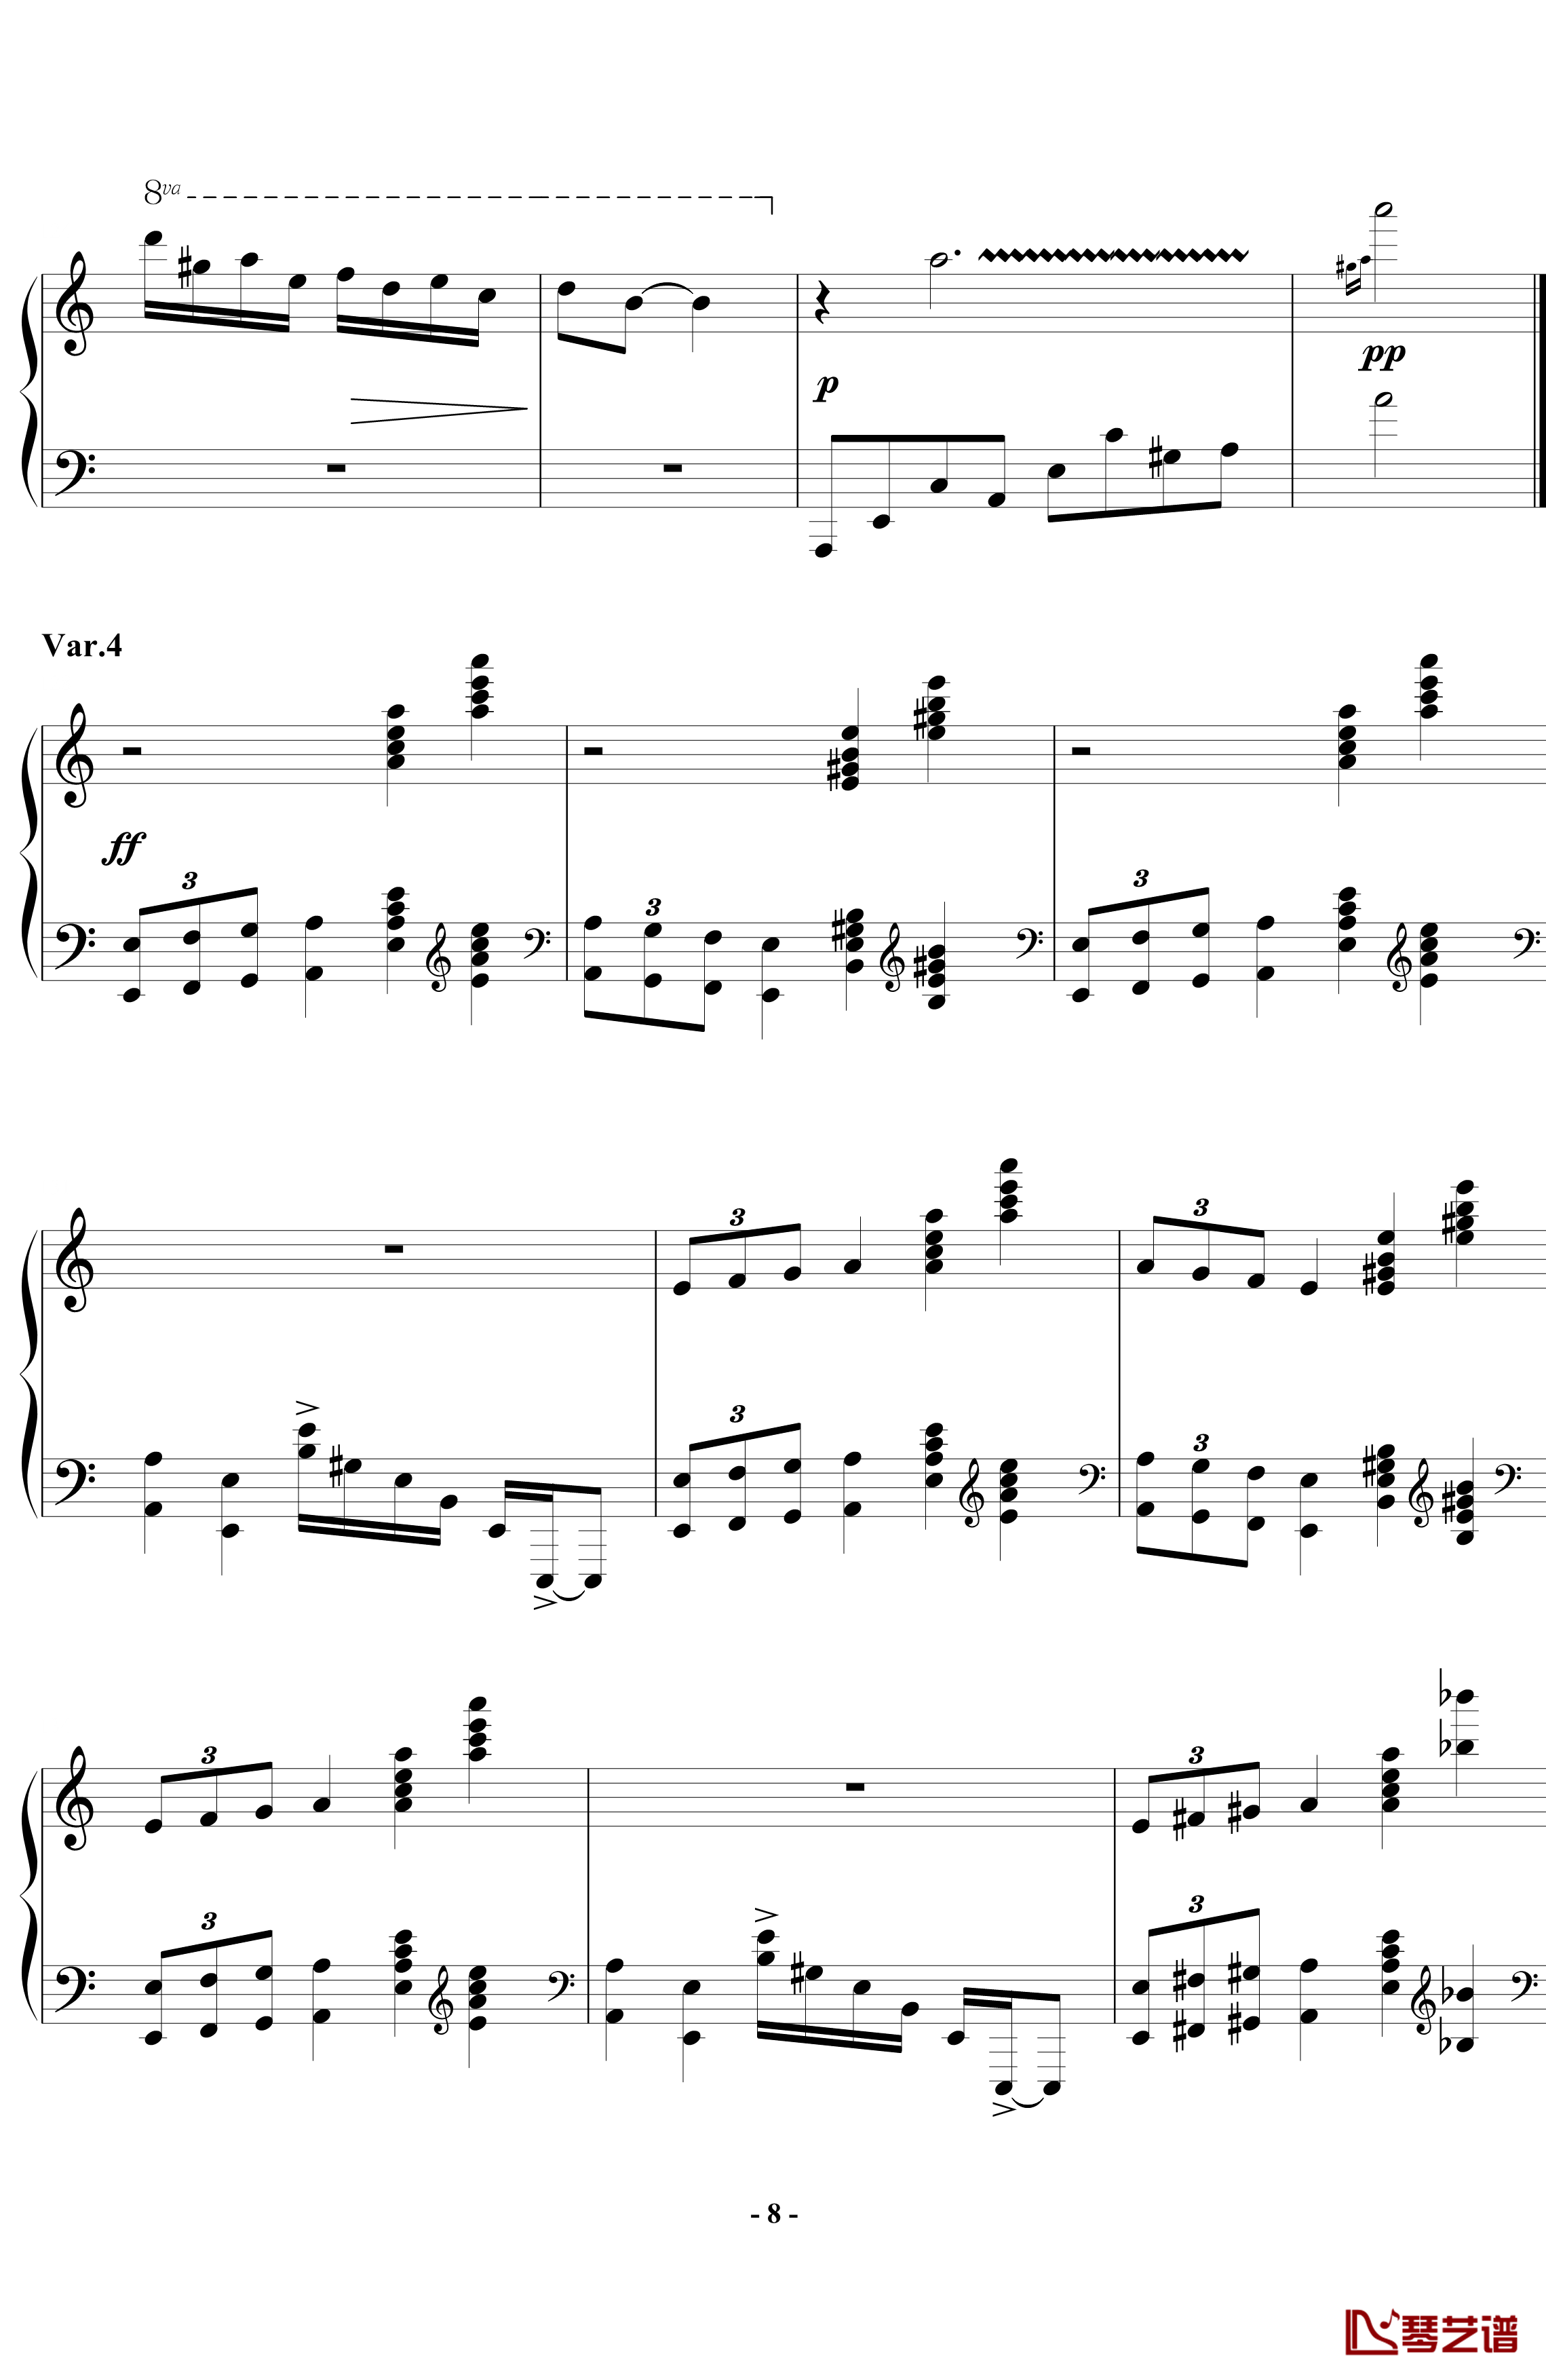 帕格尼尼飞絮曲钢琴谱-标准版-马克西姆-Maksim·Mrvica8